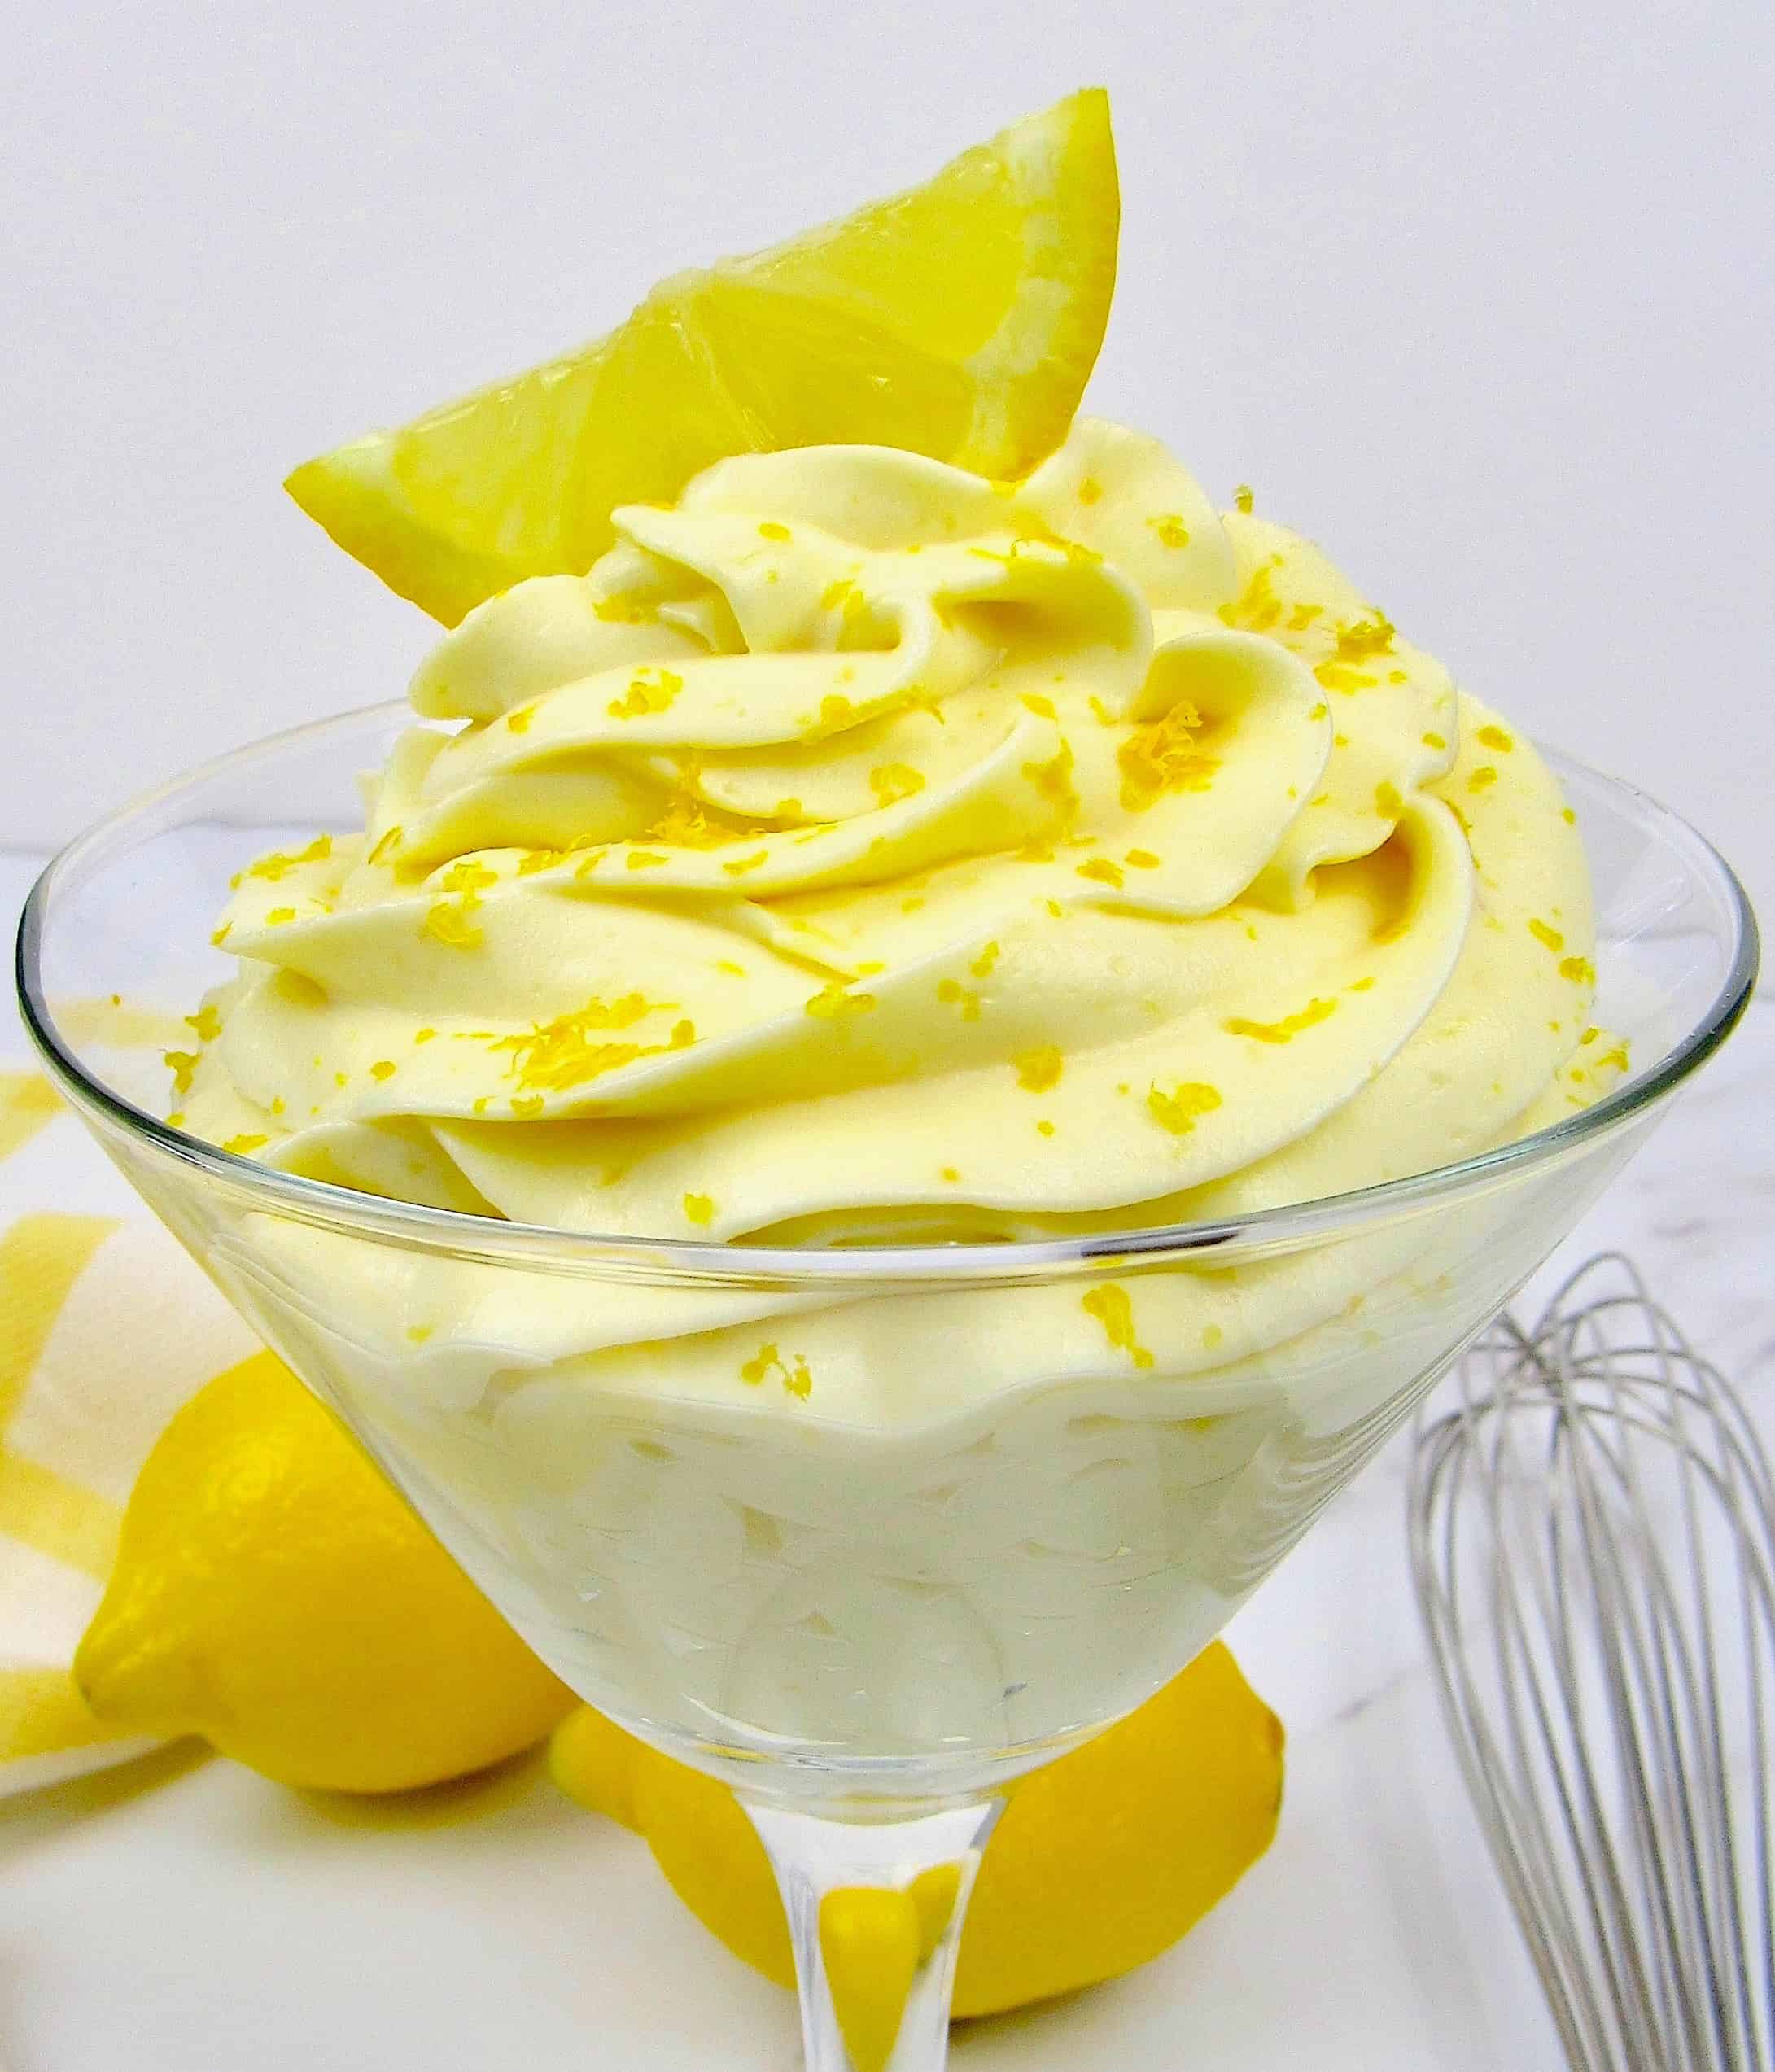 Amazing Lemon Mousse Cake Recipe!! With Lemon Cake, Lemon Curd & Zesty Lemon  Mousse!! - YouTube